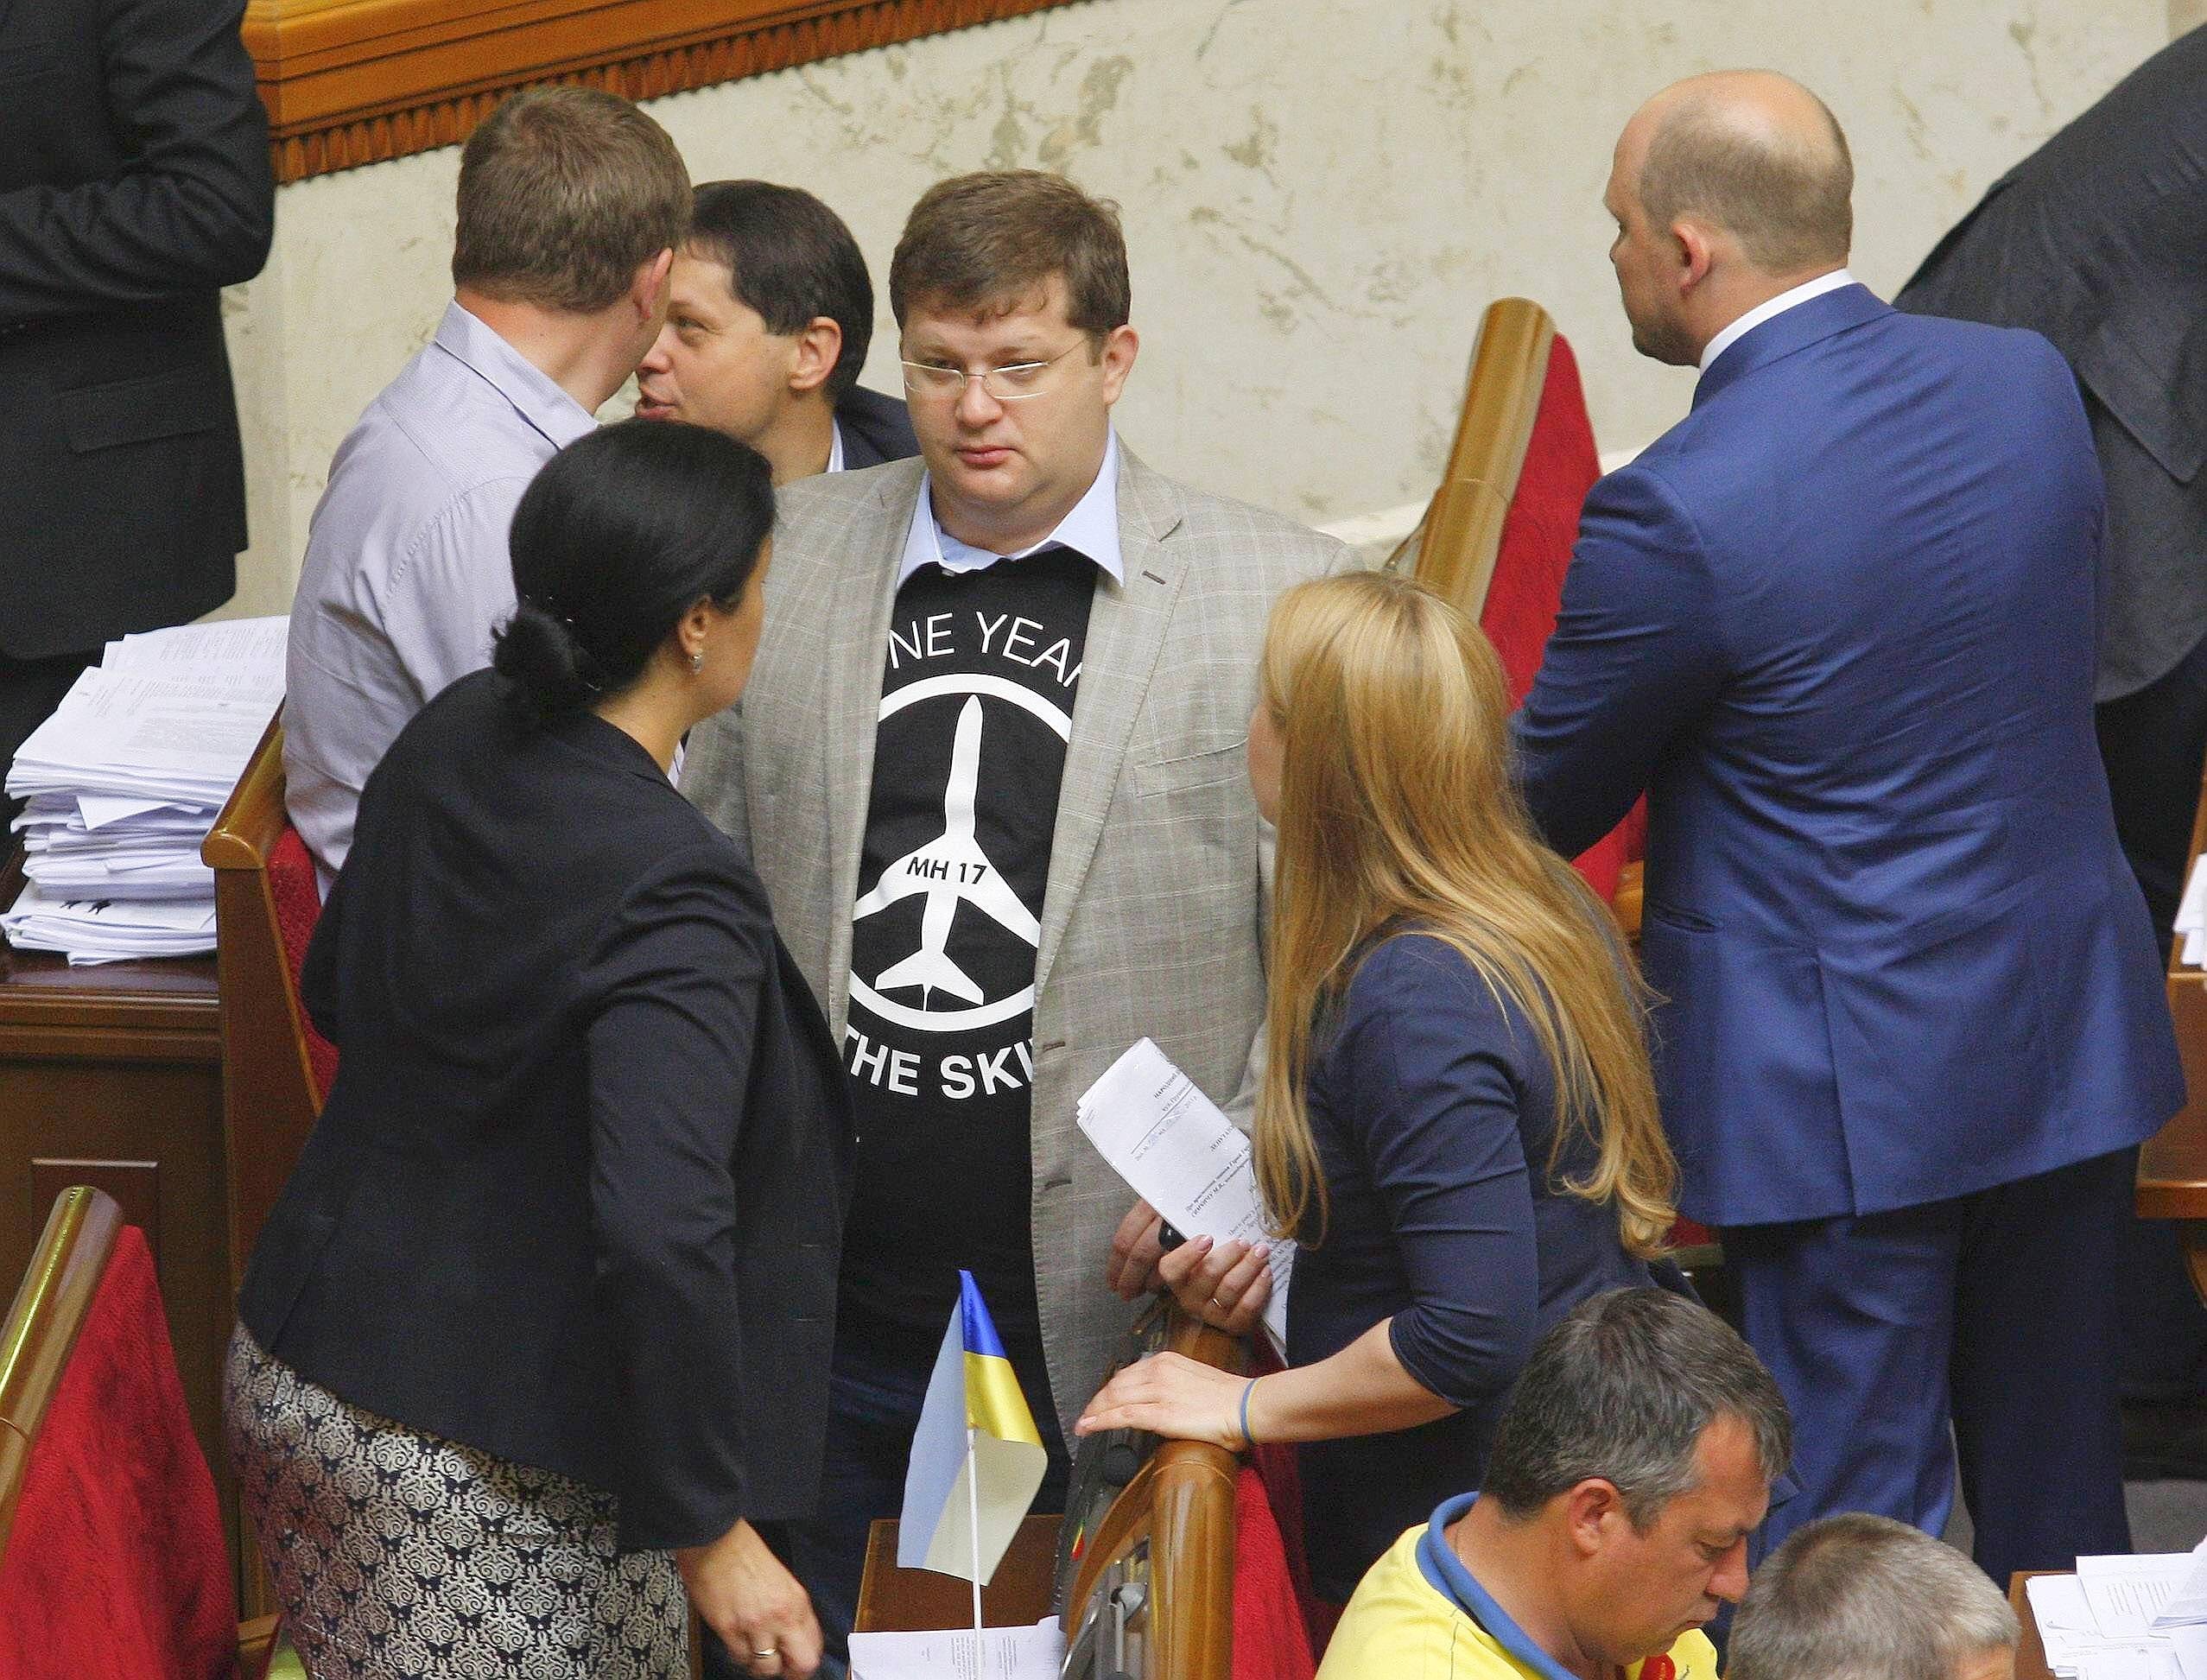 Eine Abgeordnete im Parlament trugen T-Shirts zur Erinnerung an die Opfer und als Anklage gegen Russland, dem der Absturz zur Last gelegt wird.